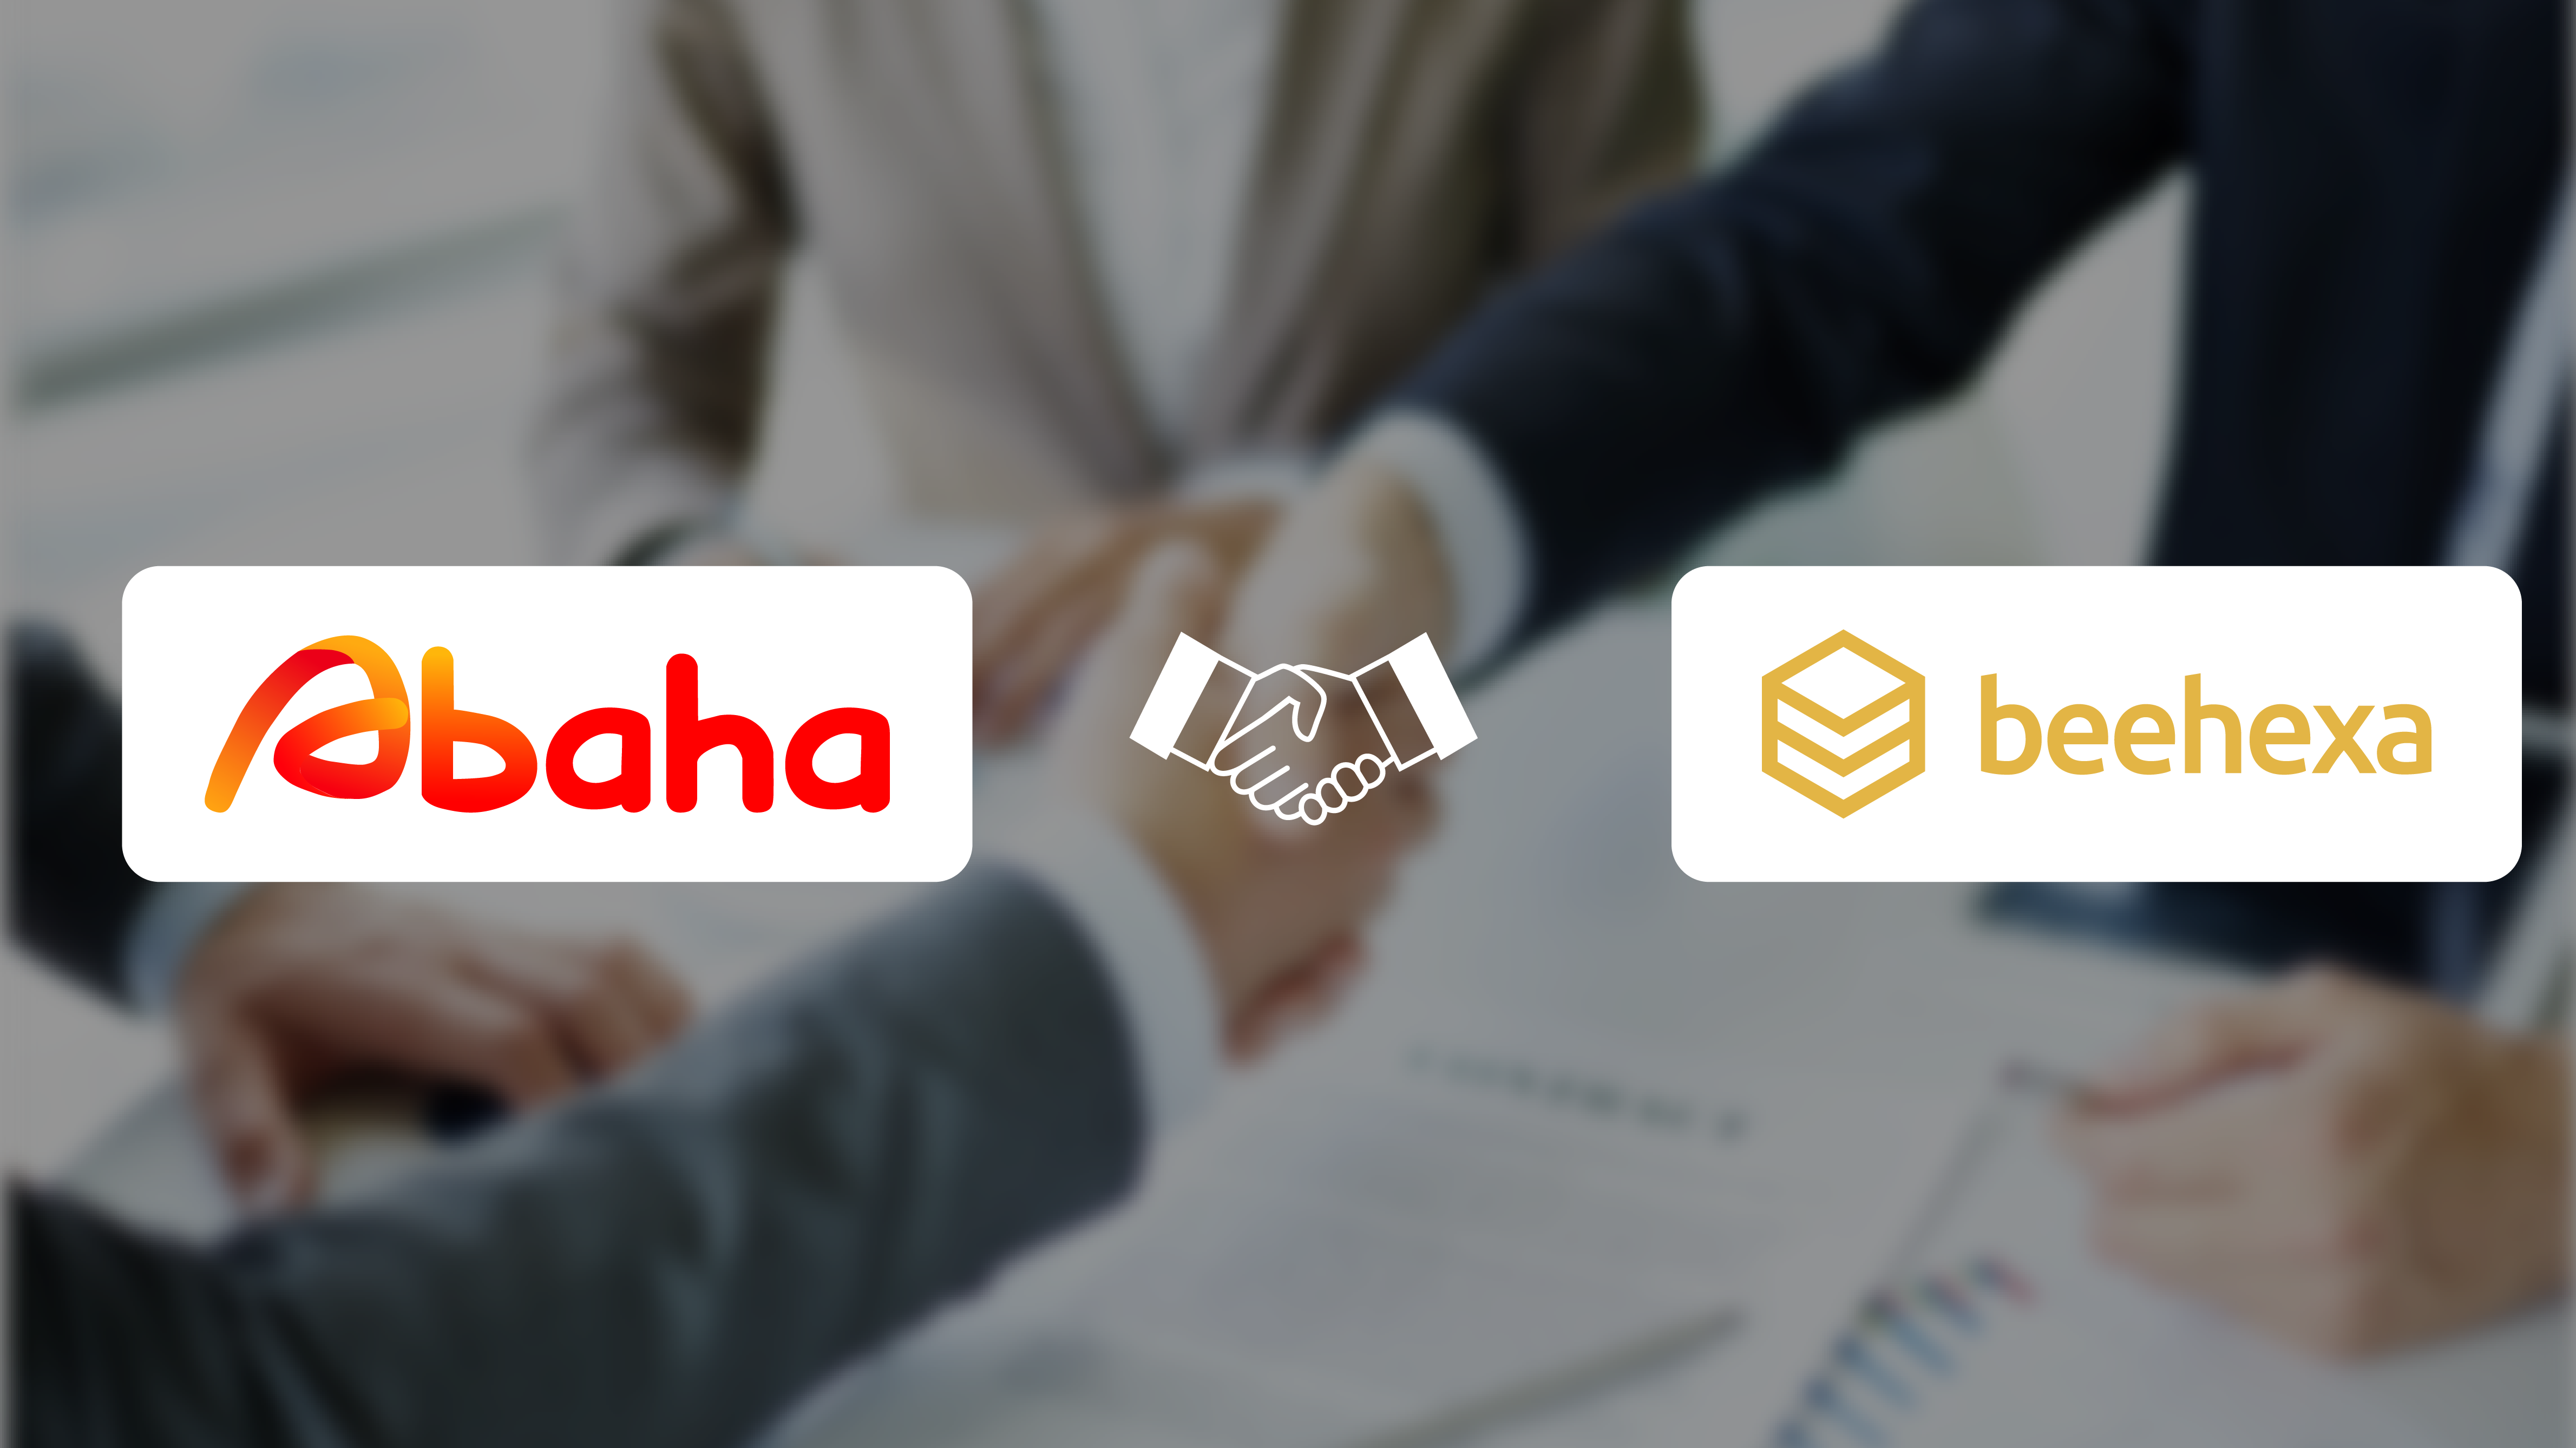 Abaha and Beehexa Partnership